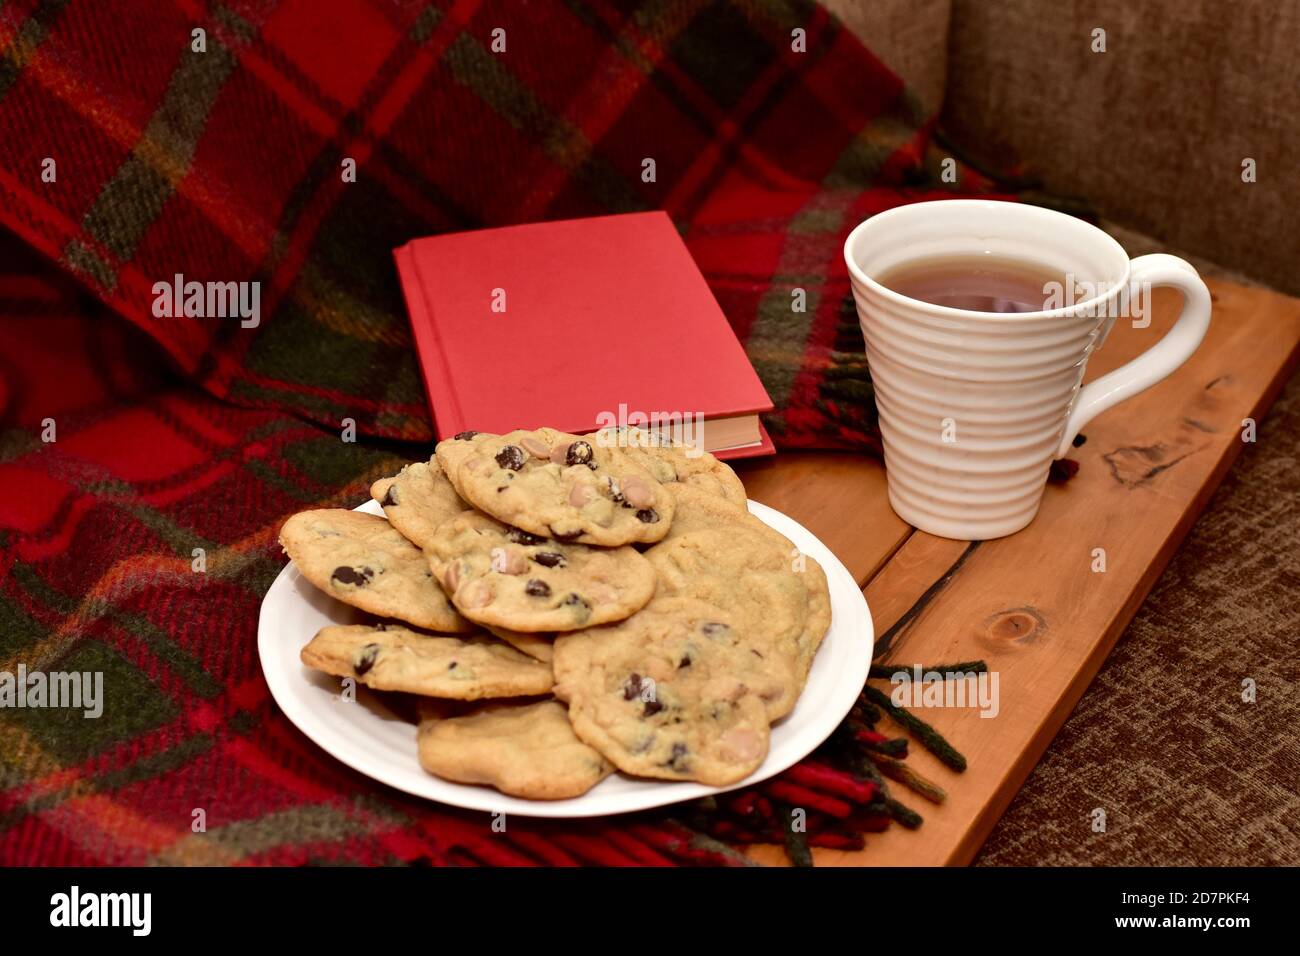 Petits gâteaux frais et chauds faits maison pour se détendre et déguster avec le thé et bon livre sur le froid hiver après-midi verrouillage à la maison Banque D'Images